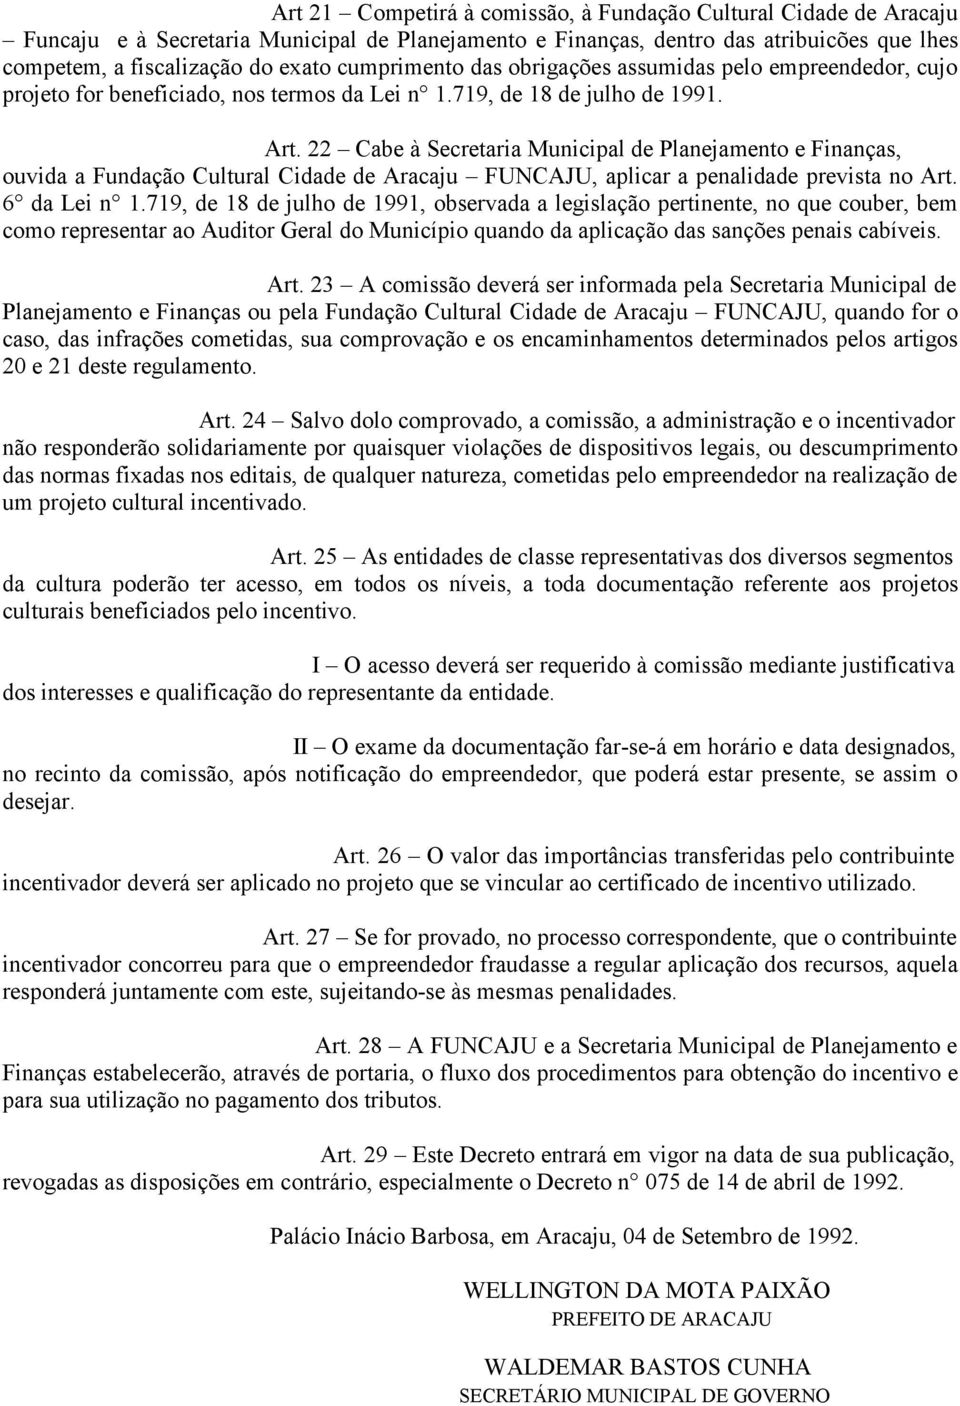 22 Cabe à Secretaria Municipal de Planejamento e Finanças, ouvida a Fundação Cultural Cidade de Aracaju FUNCAJU, aplicar a penalidade prevista no Art. 6 da Lei n 1.